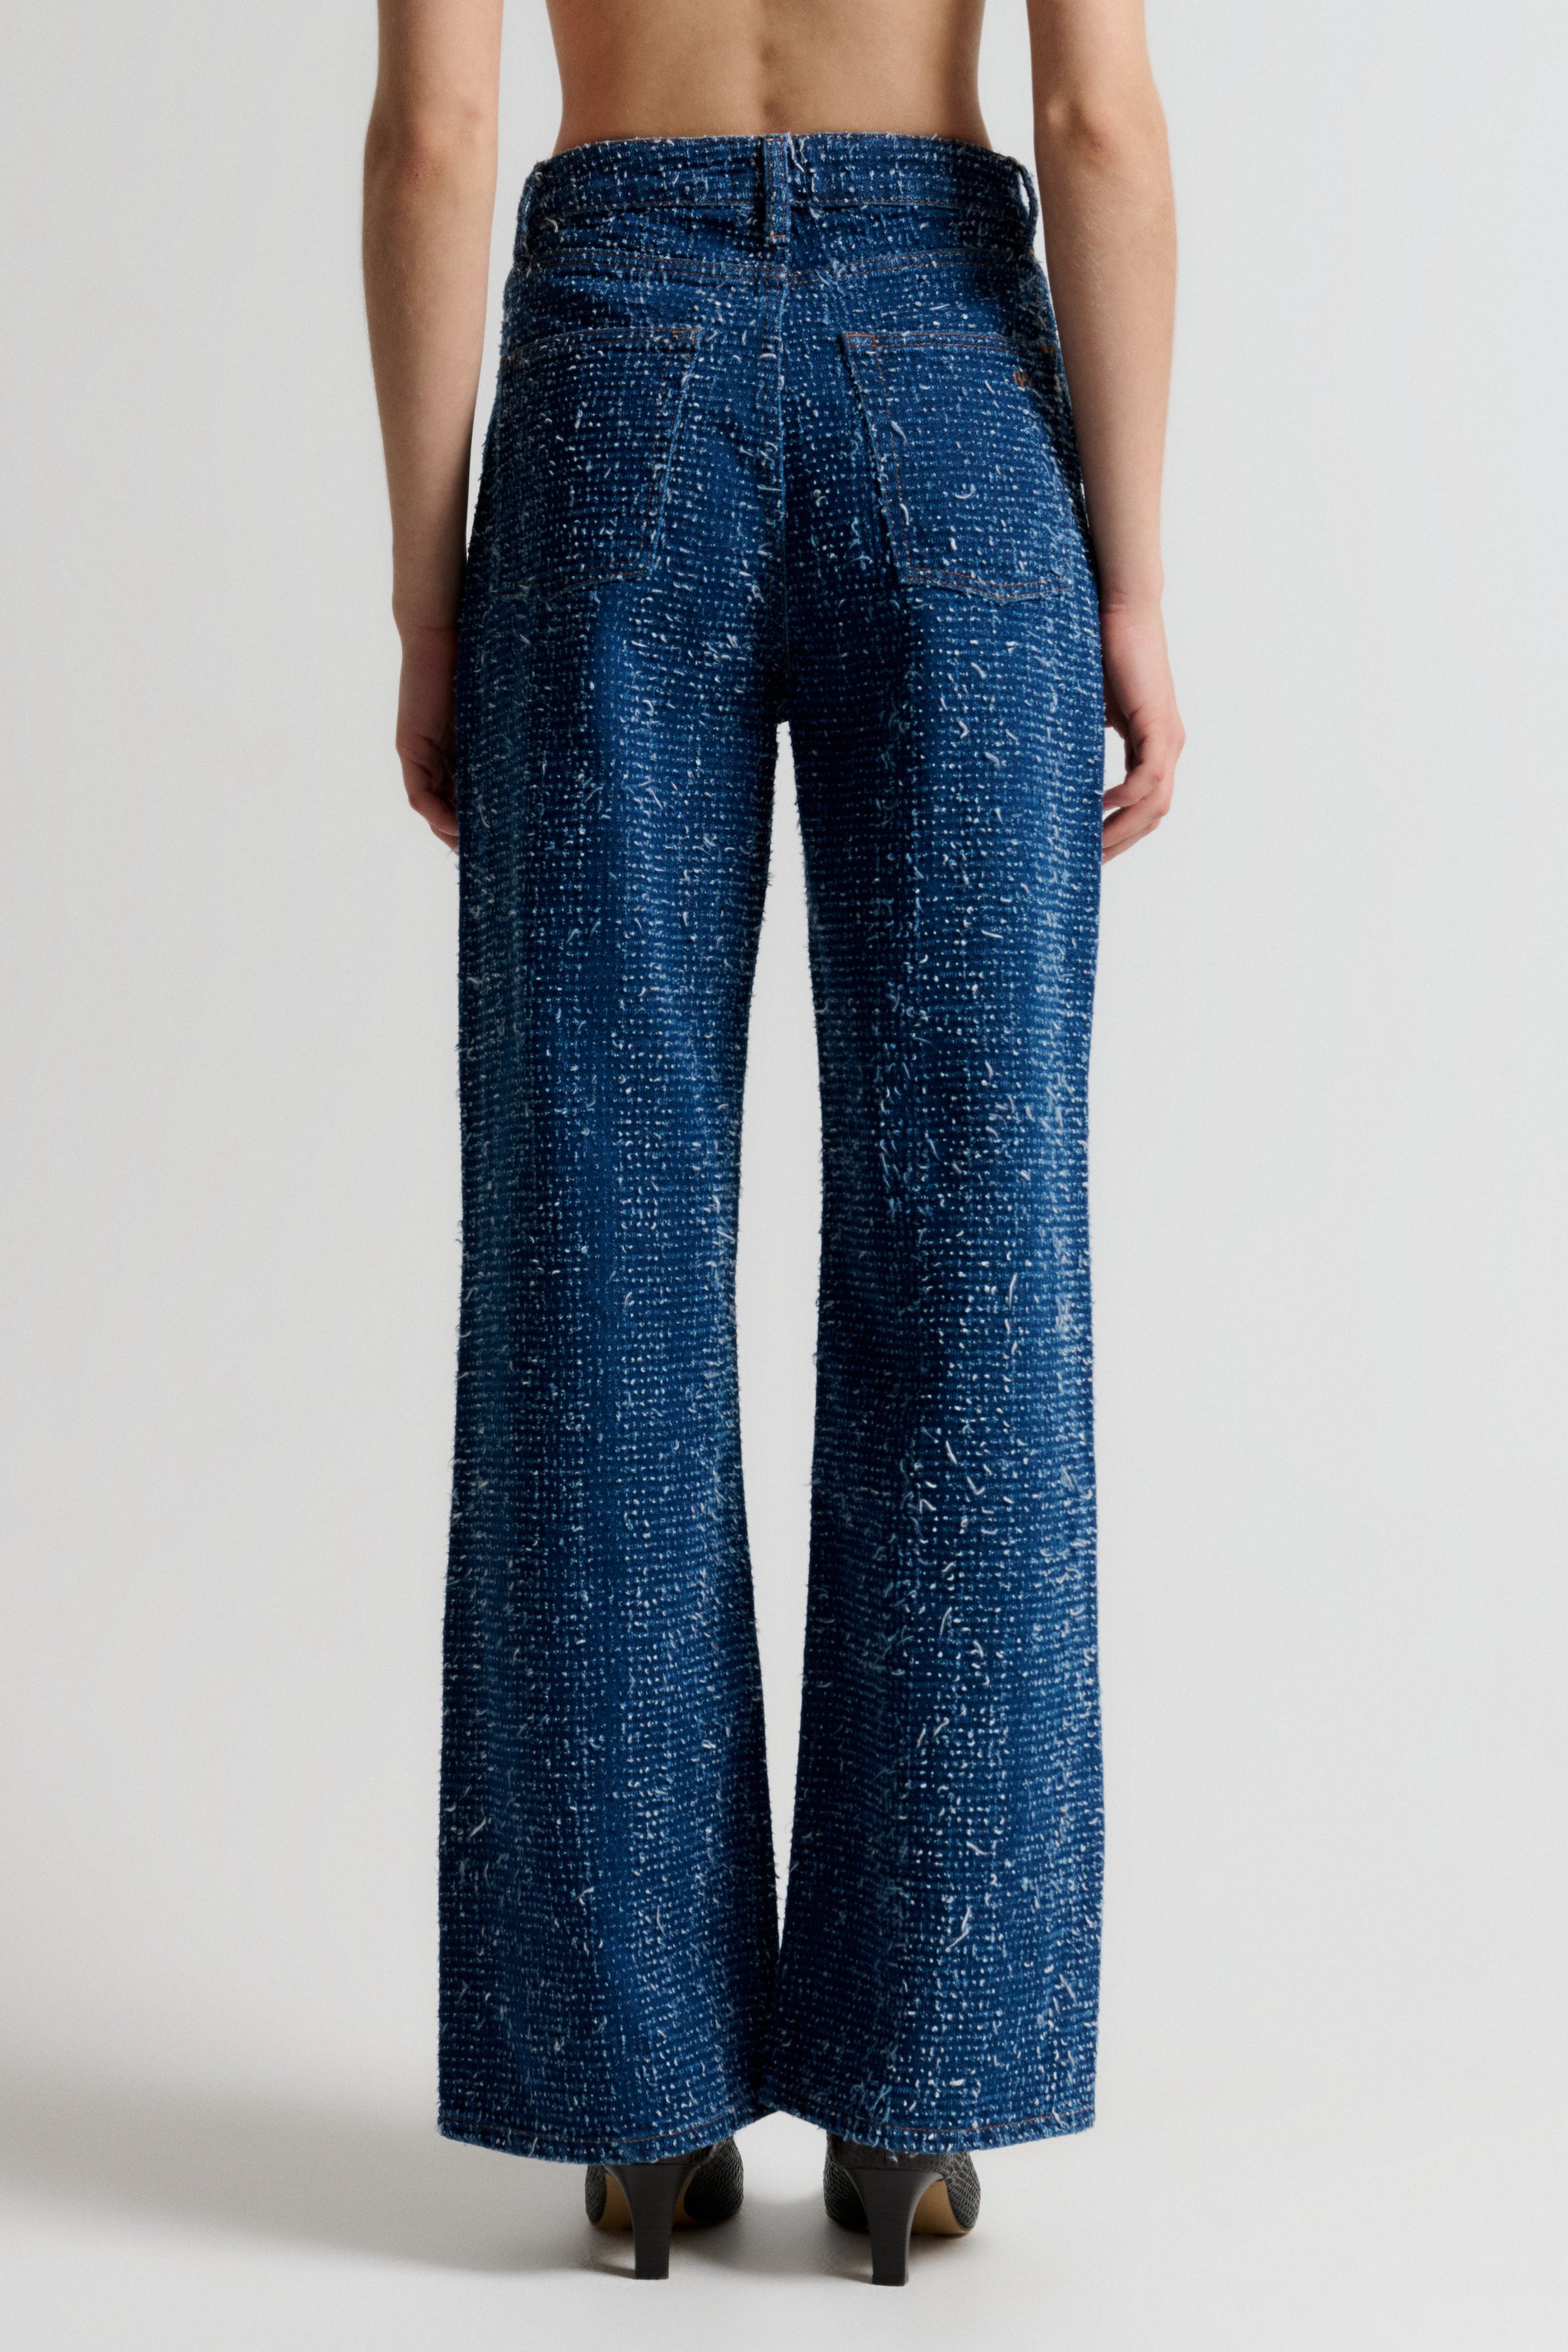 IVY Copenhagen IVY-Brooke Jeans Punch Denim Jeans & Pants 51 Denim Blue